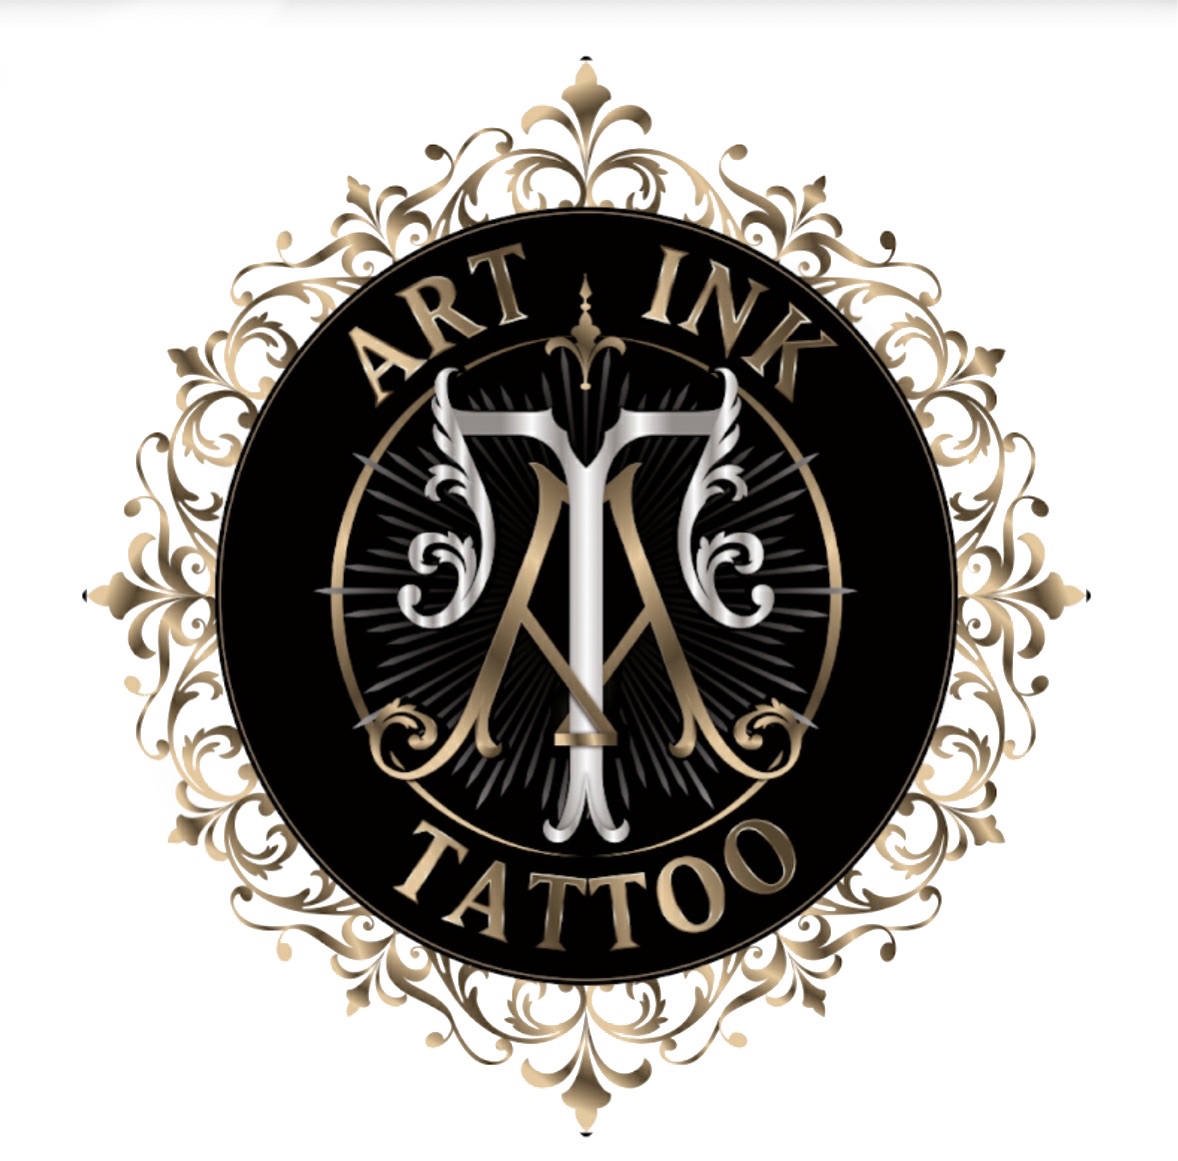 Art Ink Tattoo Studio